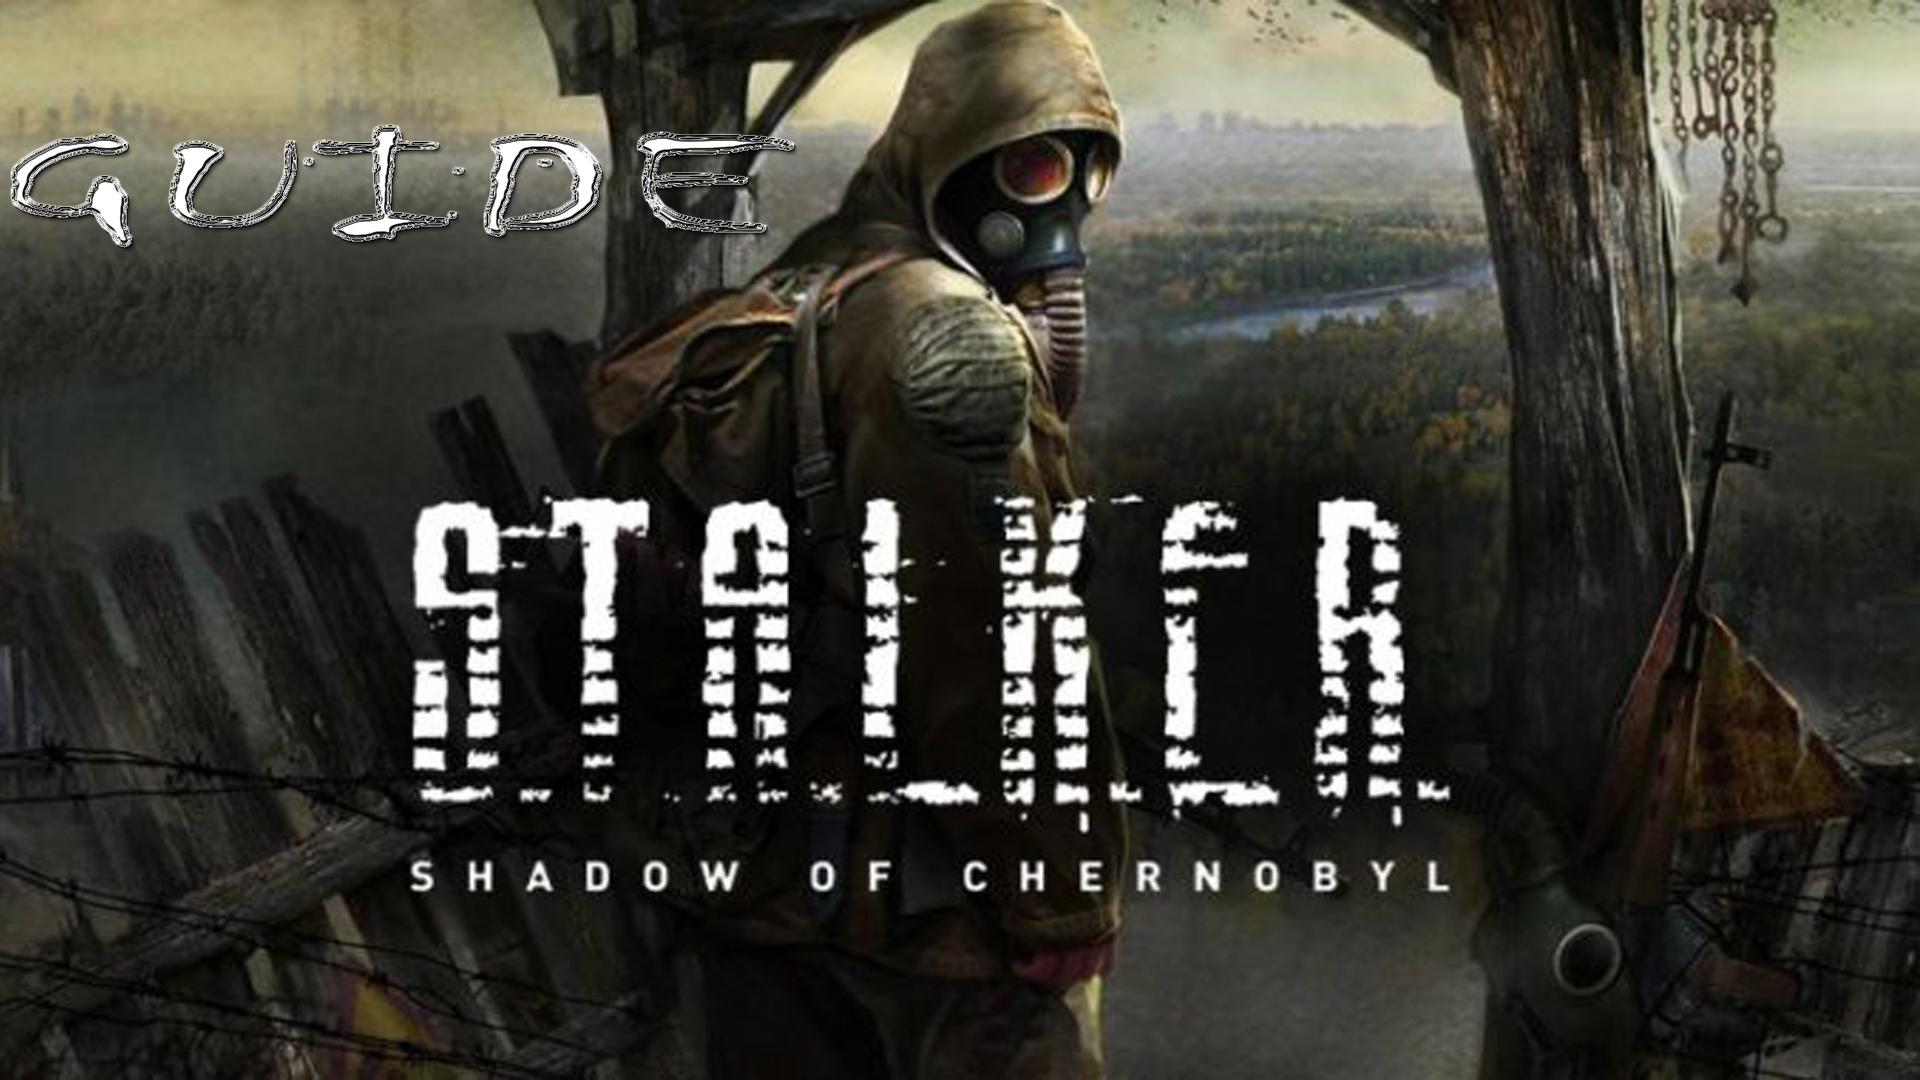 Сталкер игра на андроид с сохранением. S.T.A.L.K.E.R.: тень Чернобыля Постер. Сталкер Шедоу оф Чернобыль. Сталкер тень Чернобыля обложка игры. Сталкер тень Чернобыля обло.